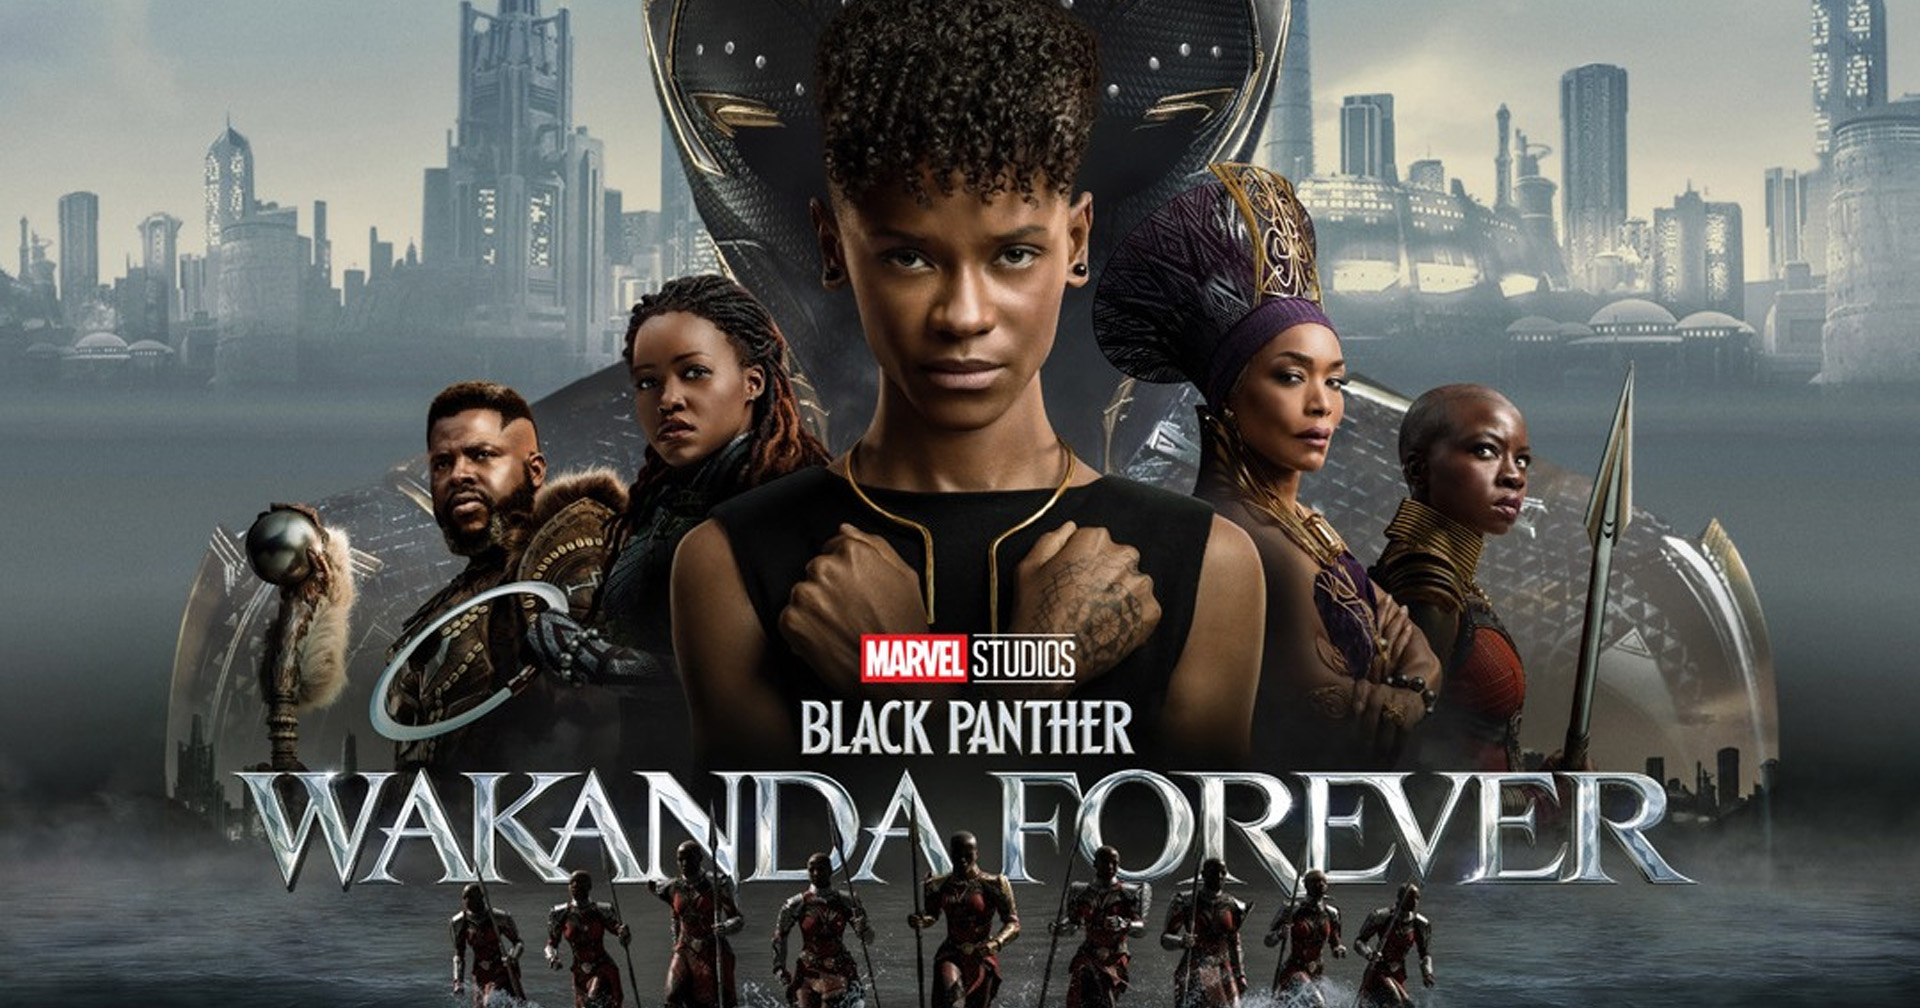 คำวิจารณ์แรก ‘Black Panther 2’ มาแล้ว ส่วนใหญ่ยกให้เป็นหนังมาร์เวลที่ดีสุด นับตั้งแต่ ‘Endgame’